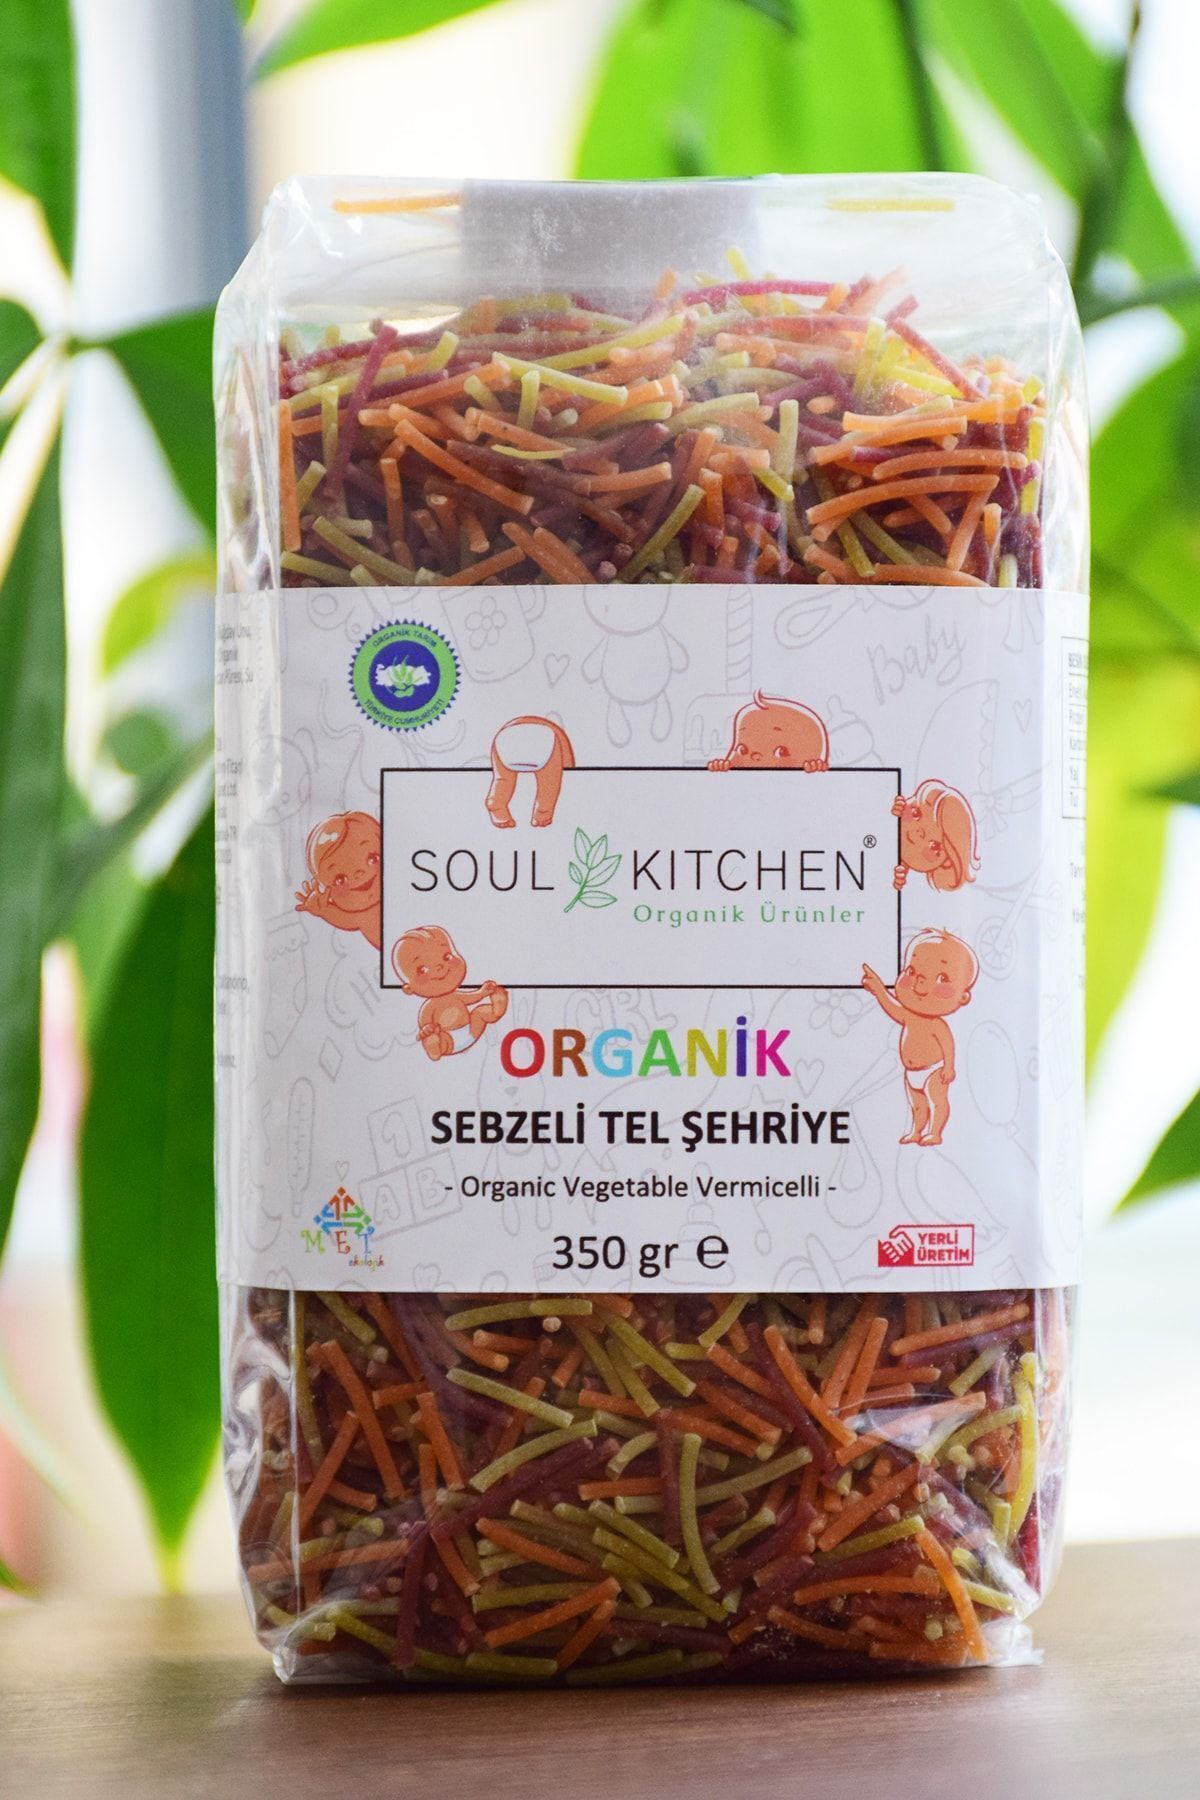 Soul Kitchen Organik Ürünler Organik Sebzeli Bebek Tel Şehriye 350gr - (İLAVE TUZSUZ) (VEGAN)